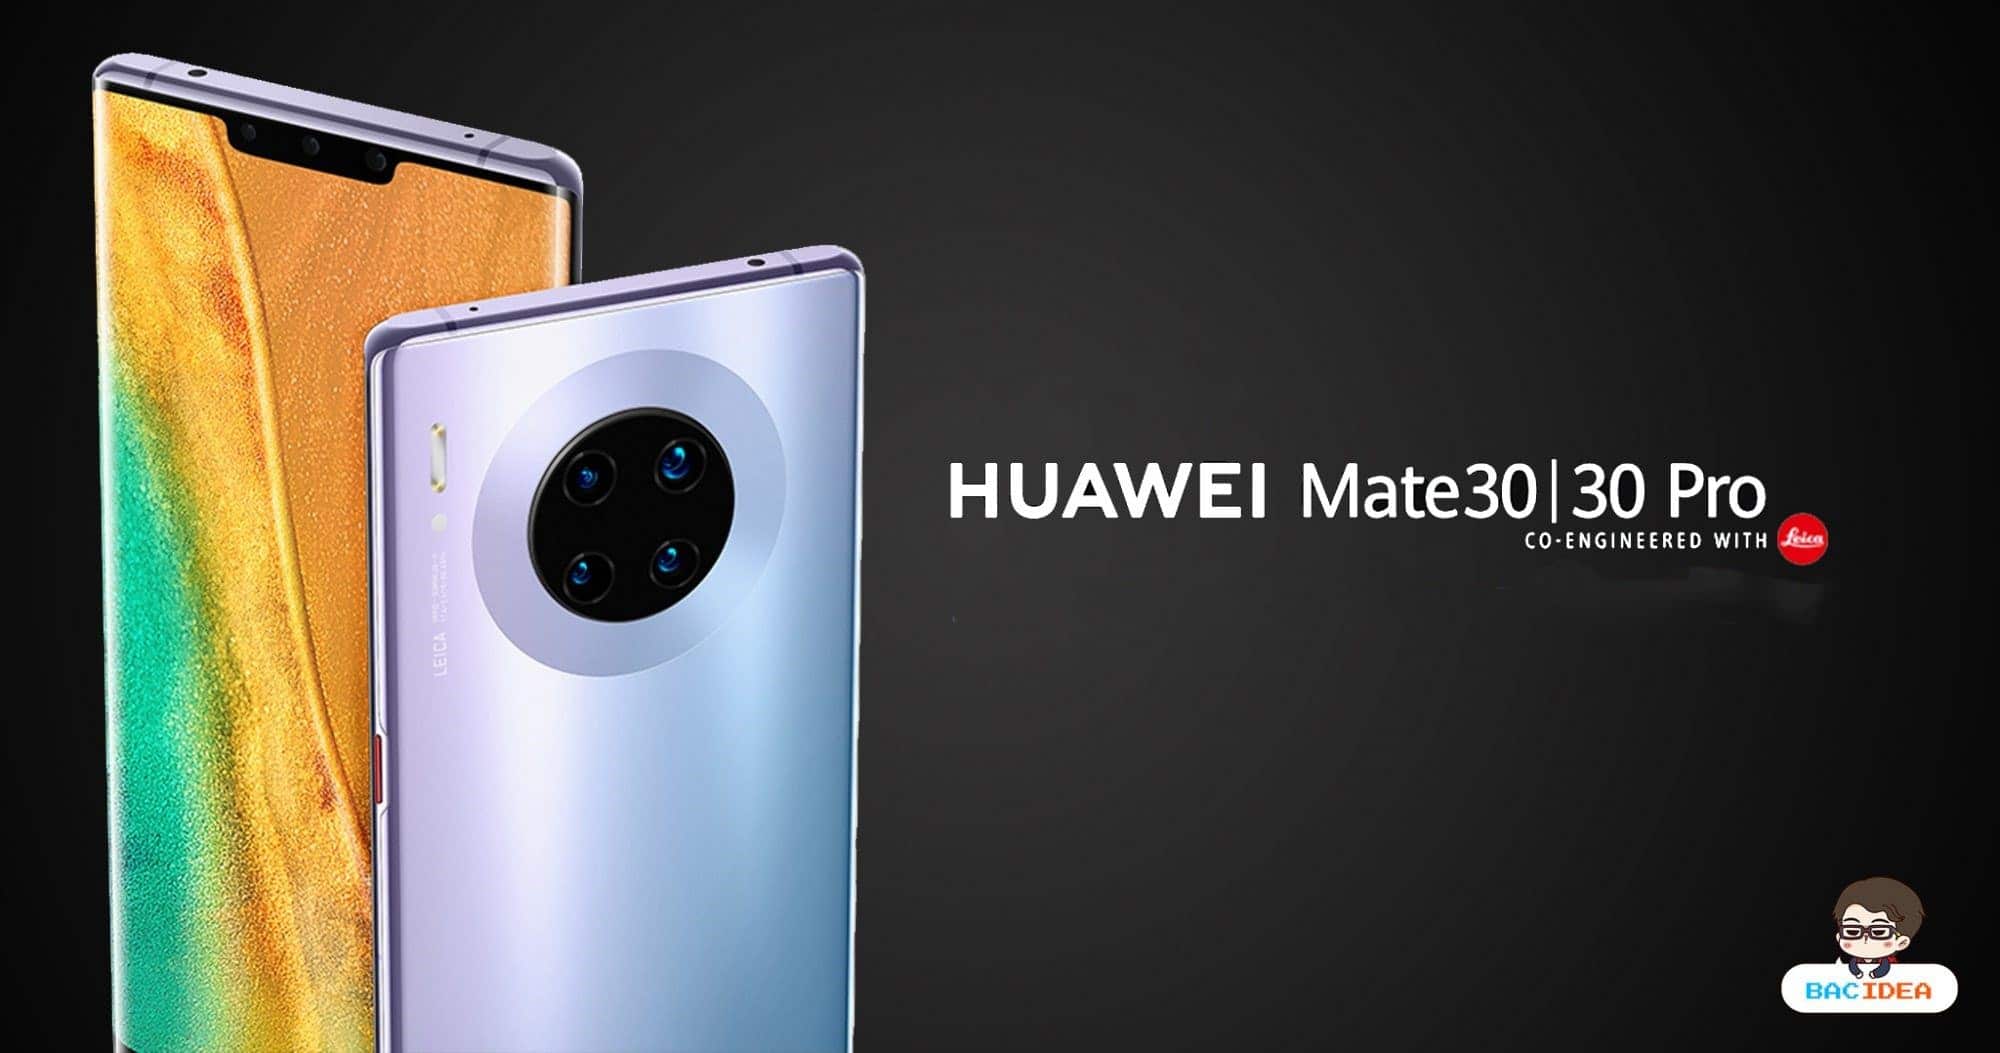 เผยราคา HUAWEI Mate 30 Series ในจีน เริ่มต้น 17,000 บาท 1